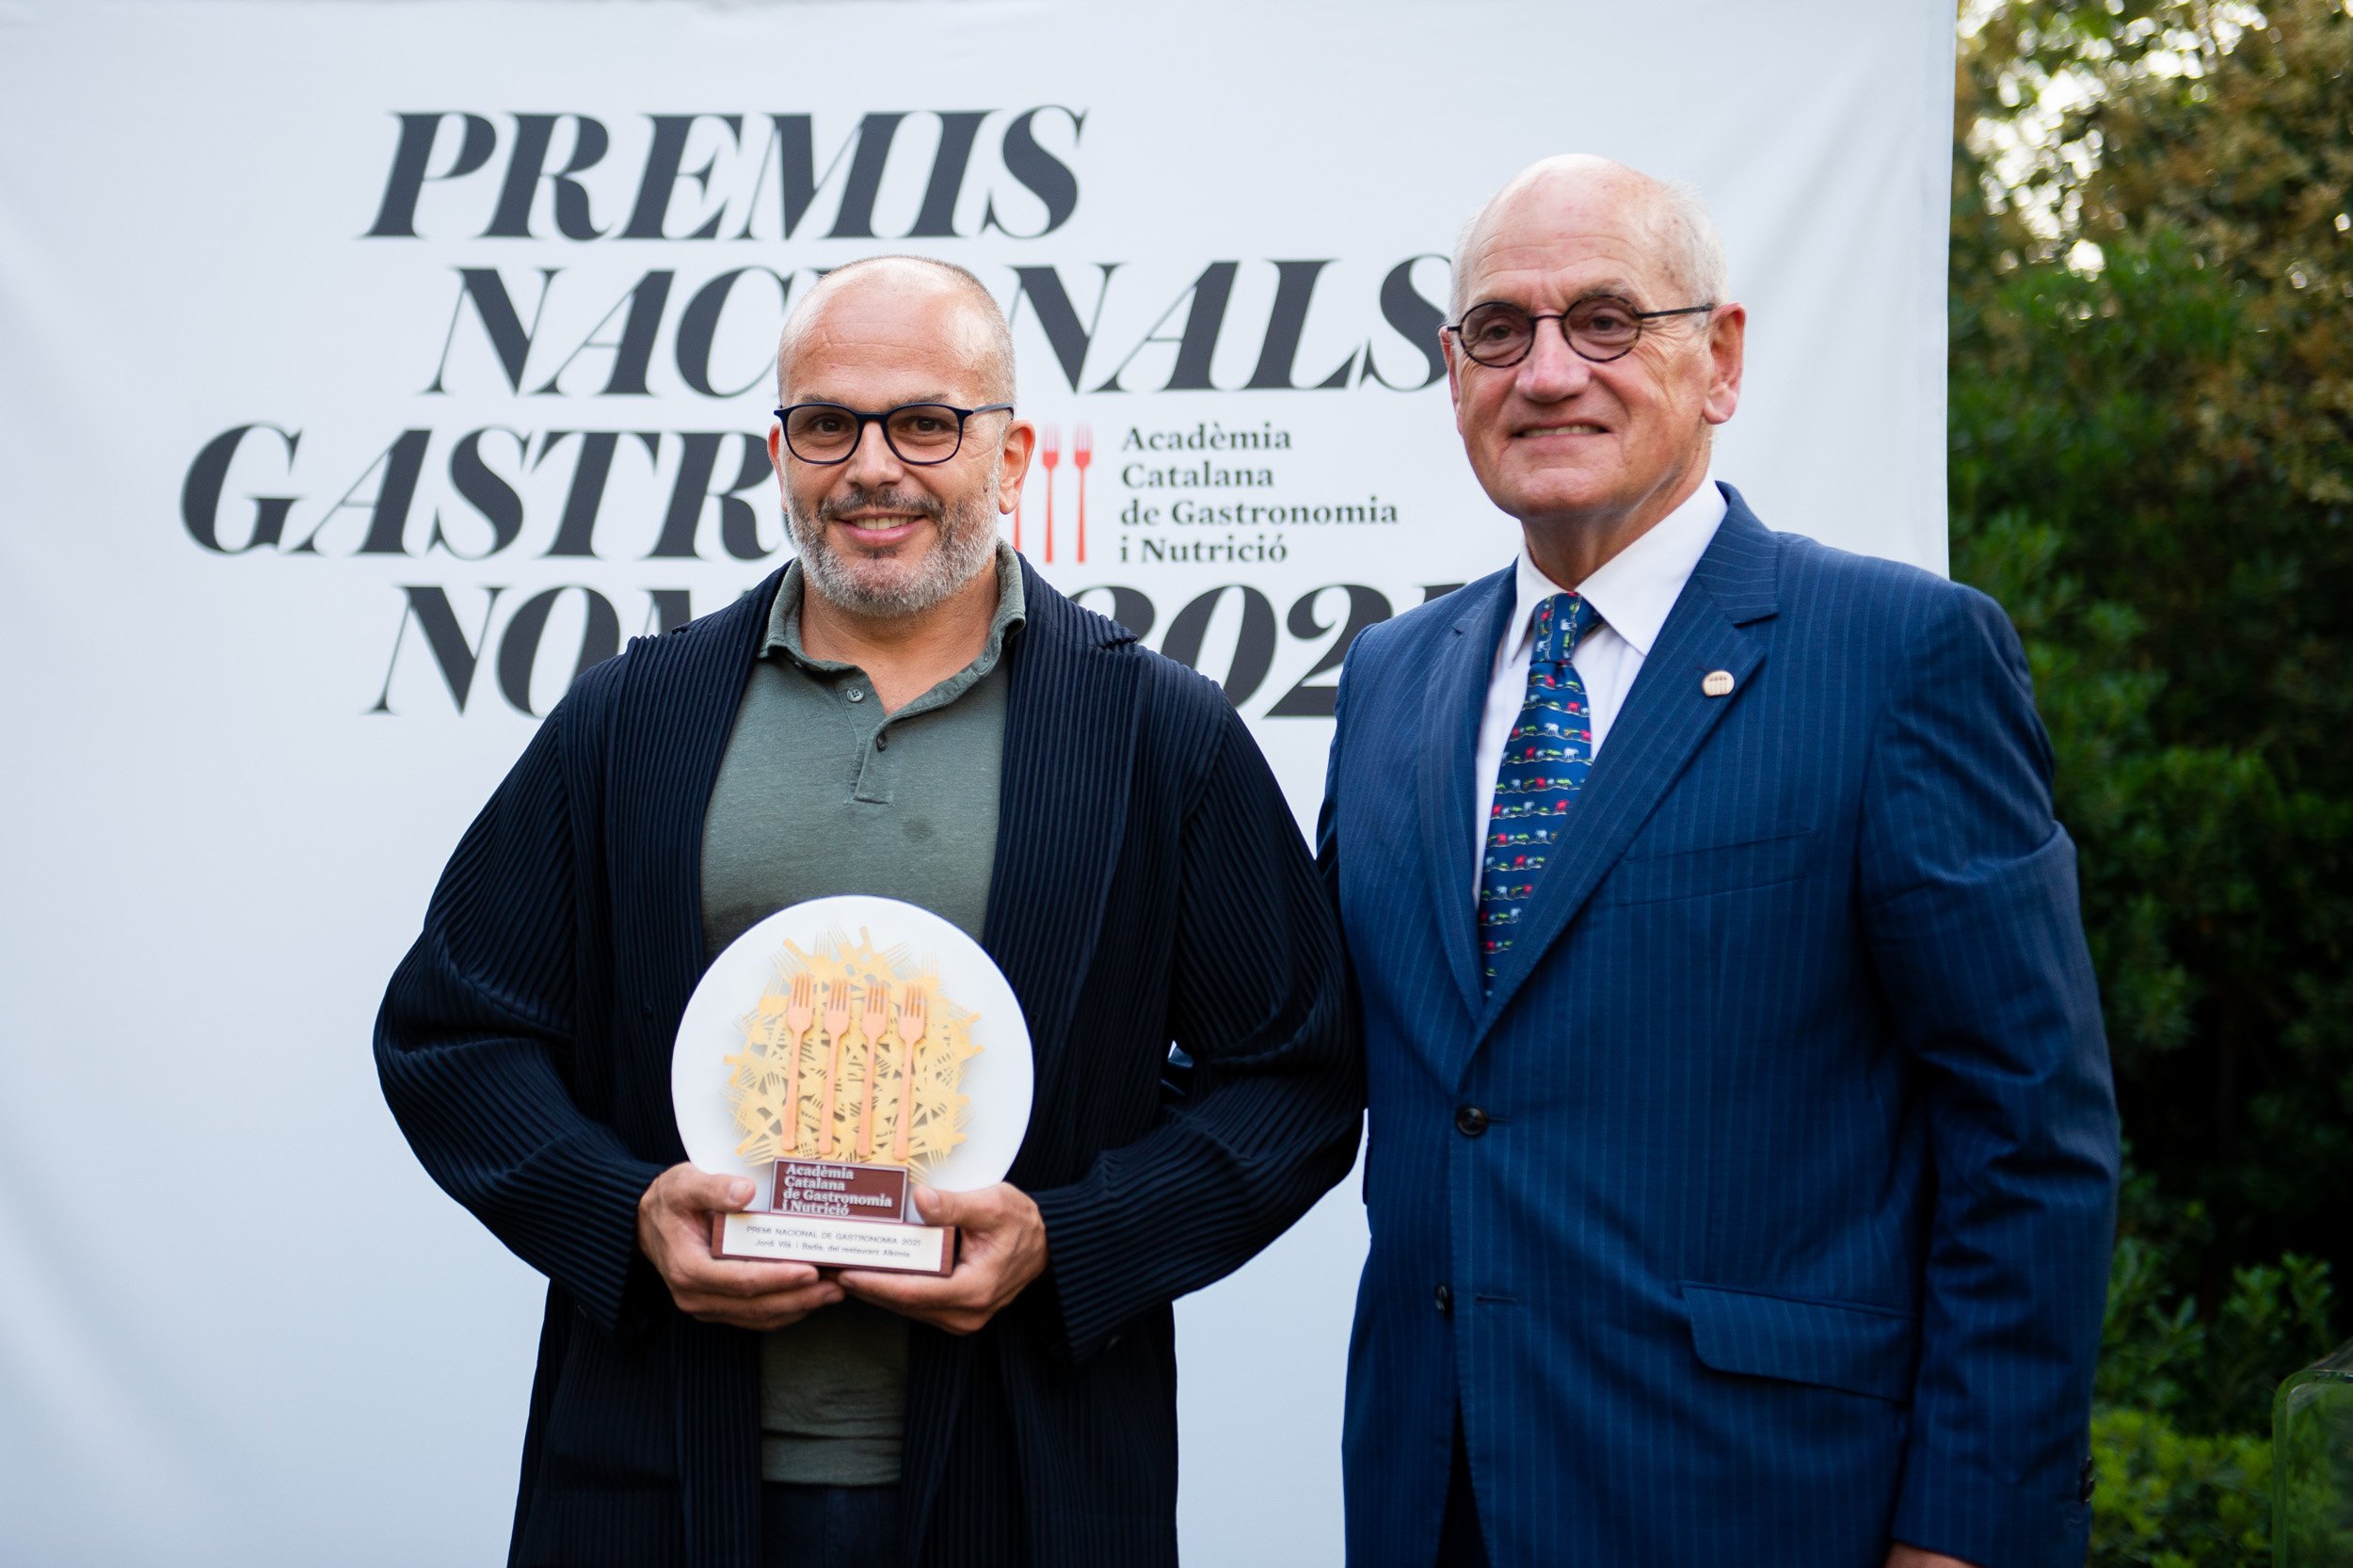 Jordi Vilà, chef del Alkimia, galardonado con el Premio Nacional de Gastronomía